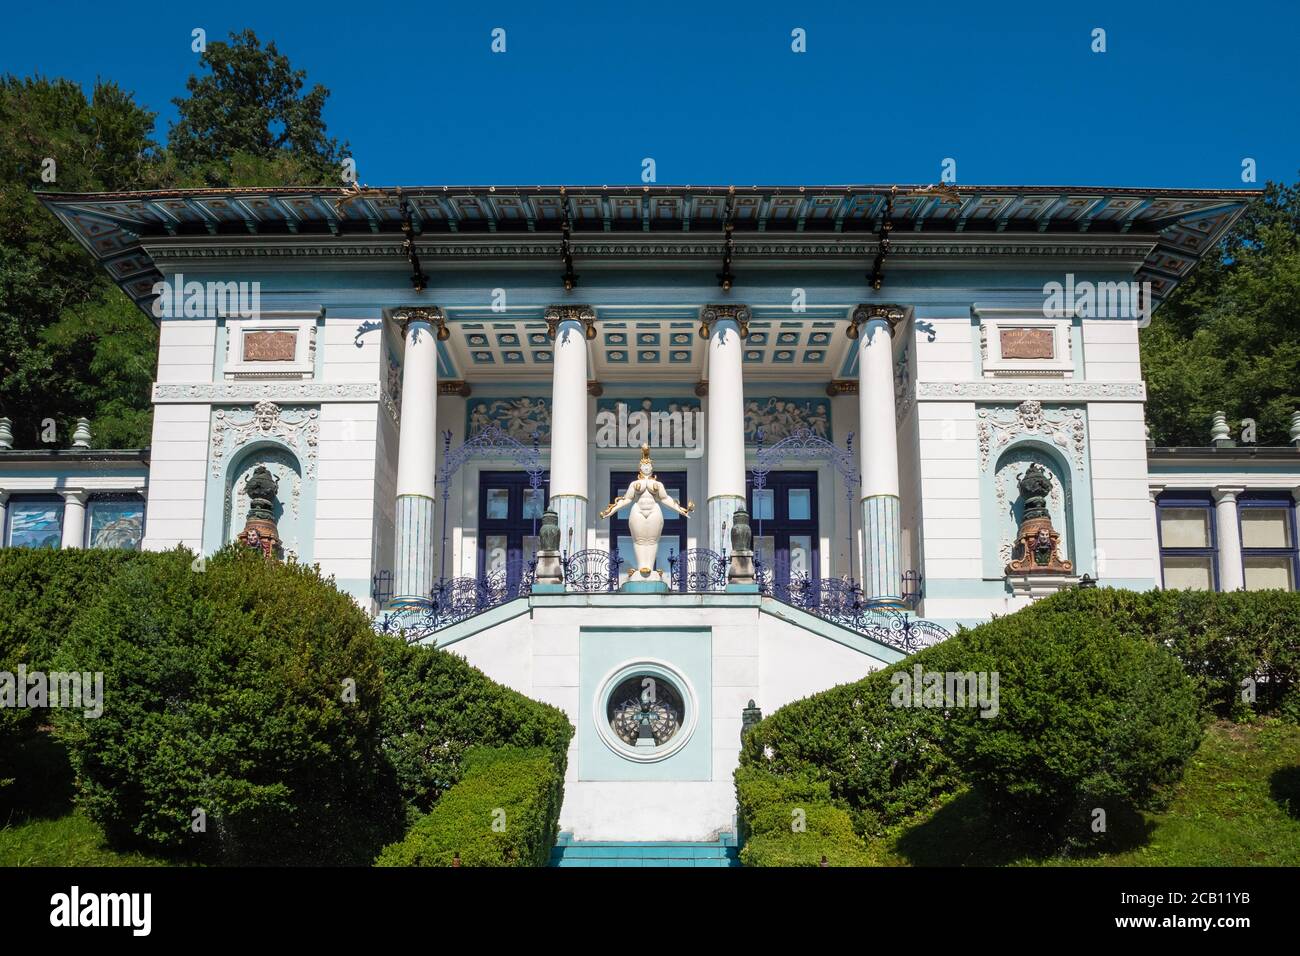 Vienne, Autriche - août 8 2020 : Villa Otto Wagner avec le musée Ernst Fuchs, un bâtiment Art nouveau, également appelé Villa Ben Tieber. Banque D'Images